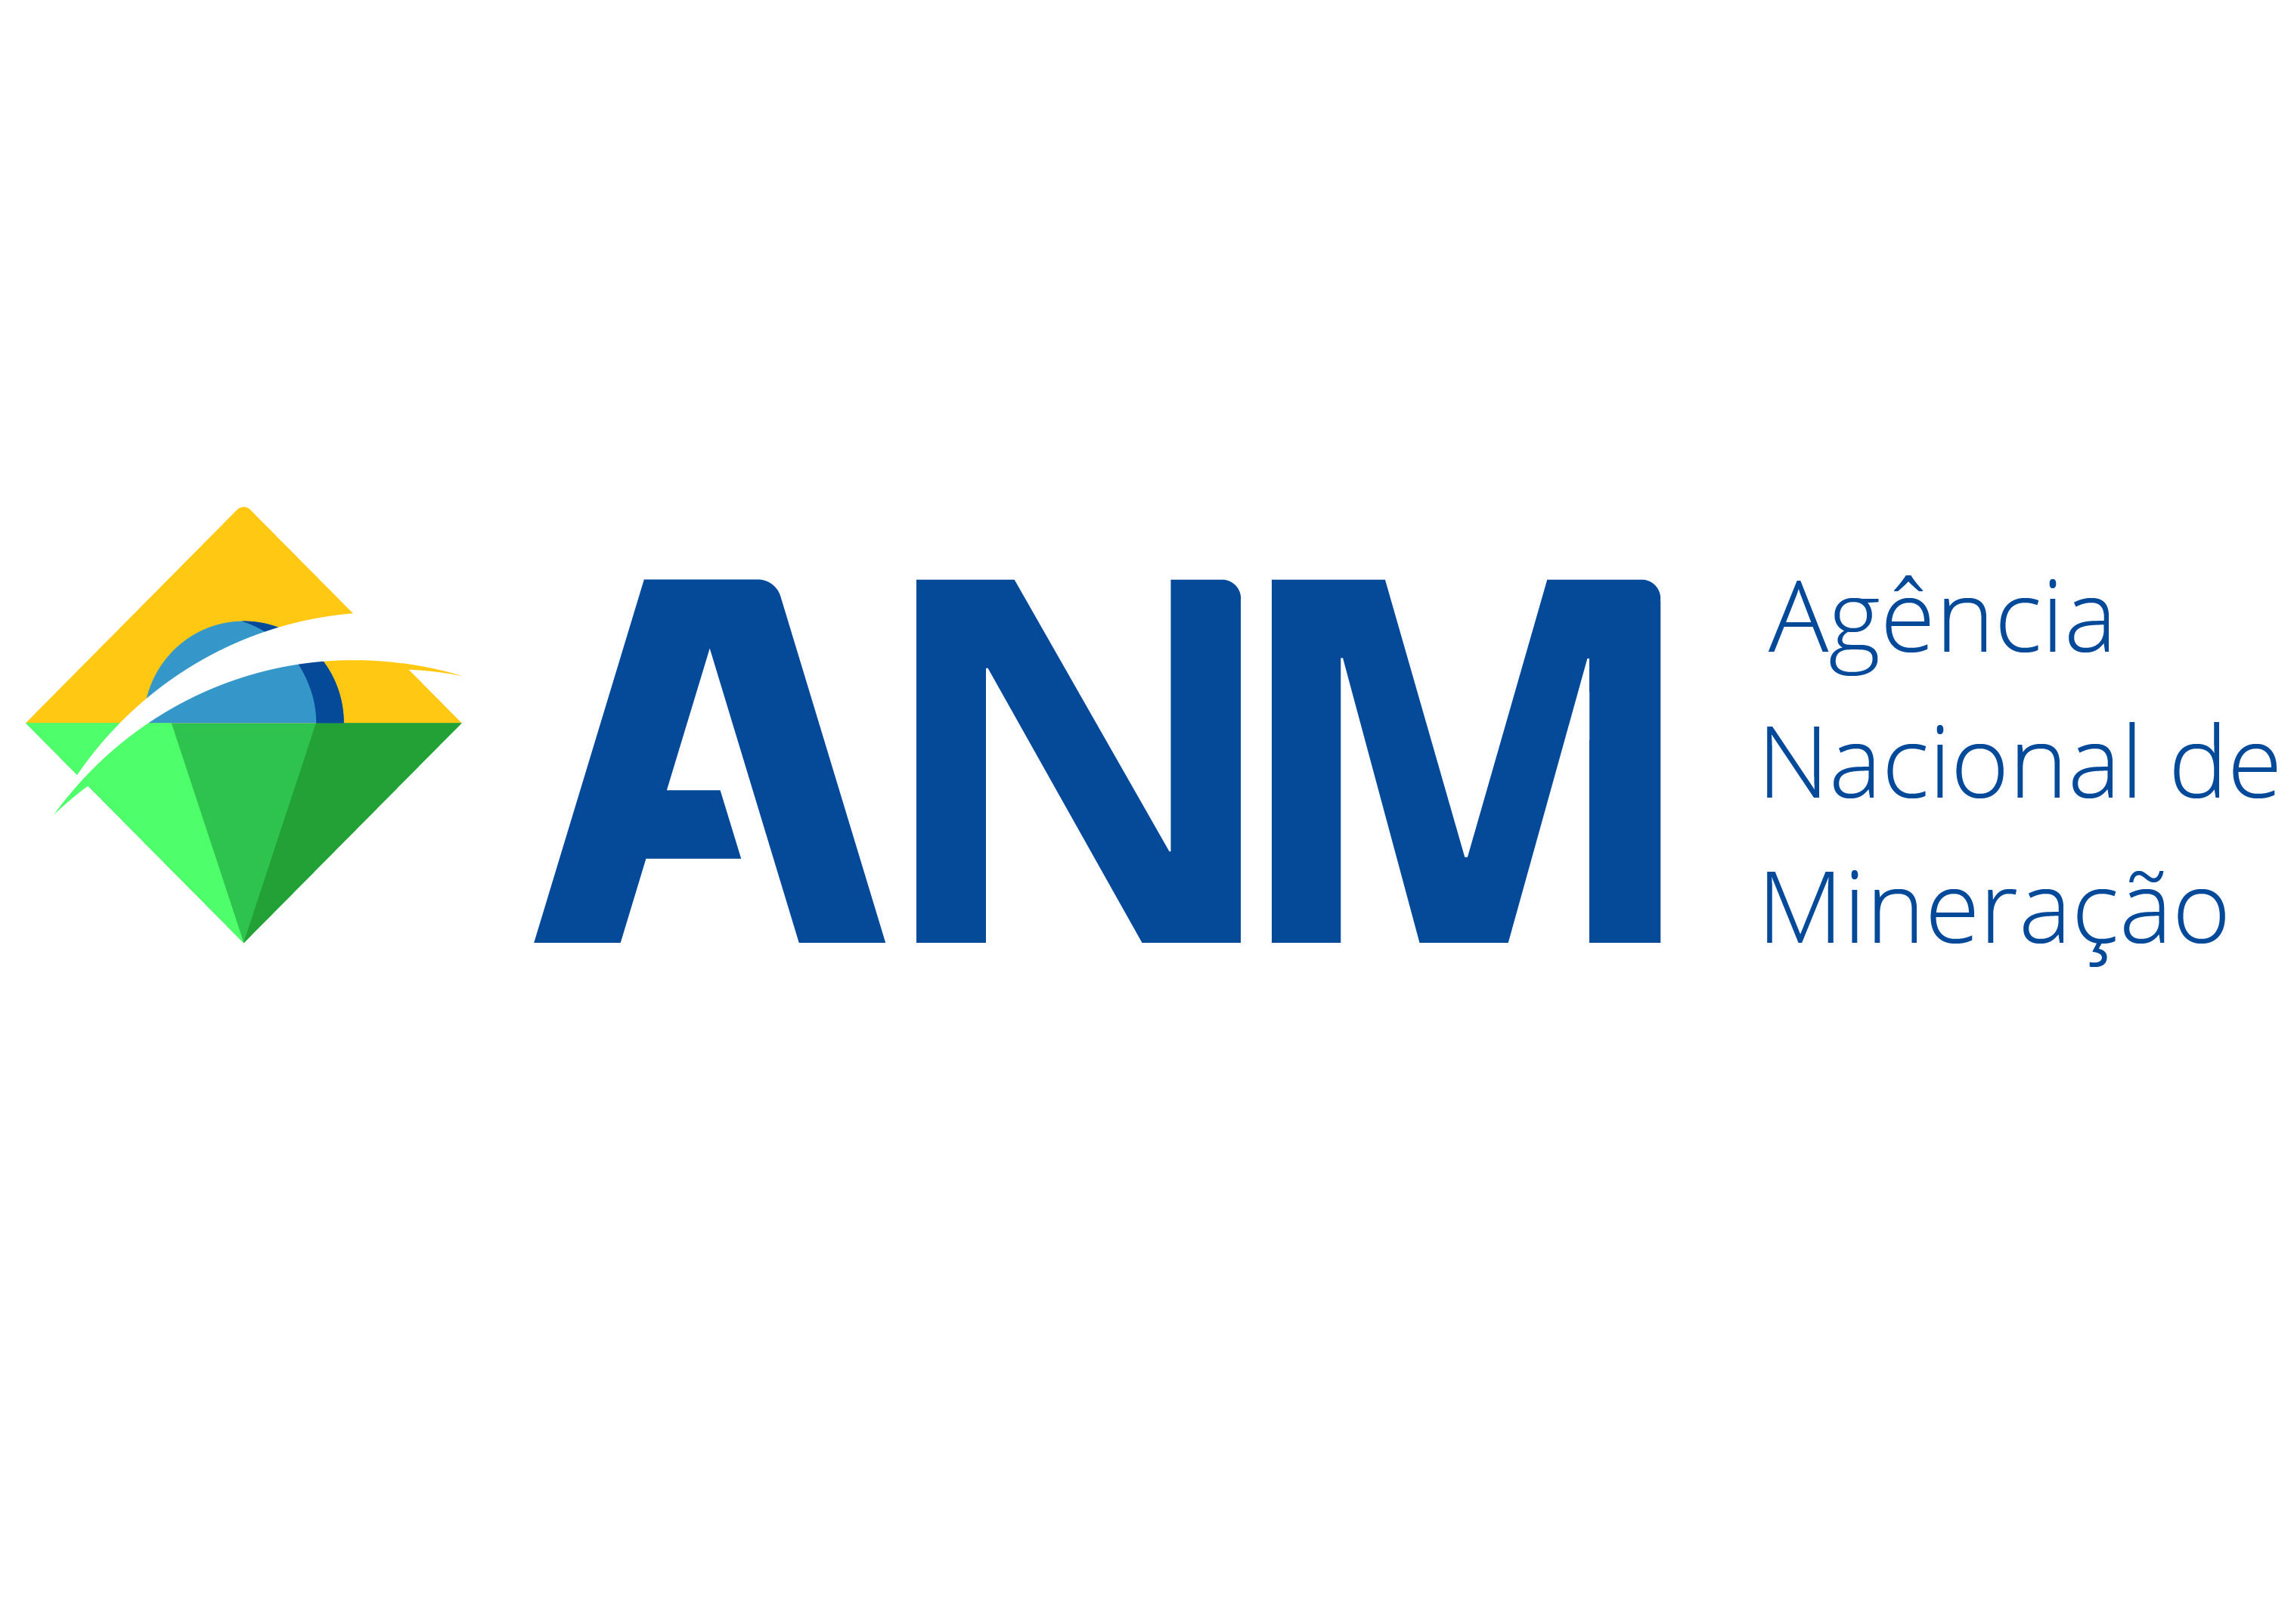 ANM - Agência Nacional de Mineração